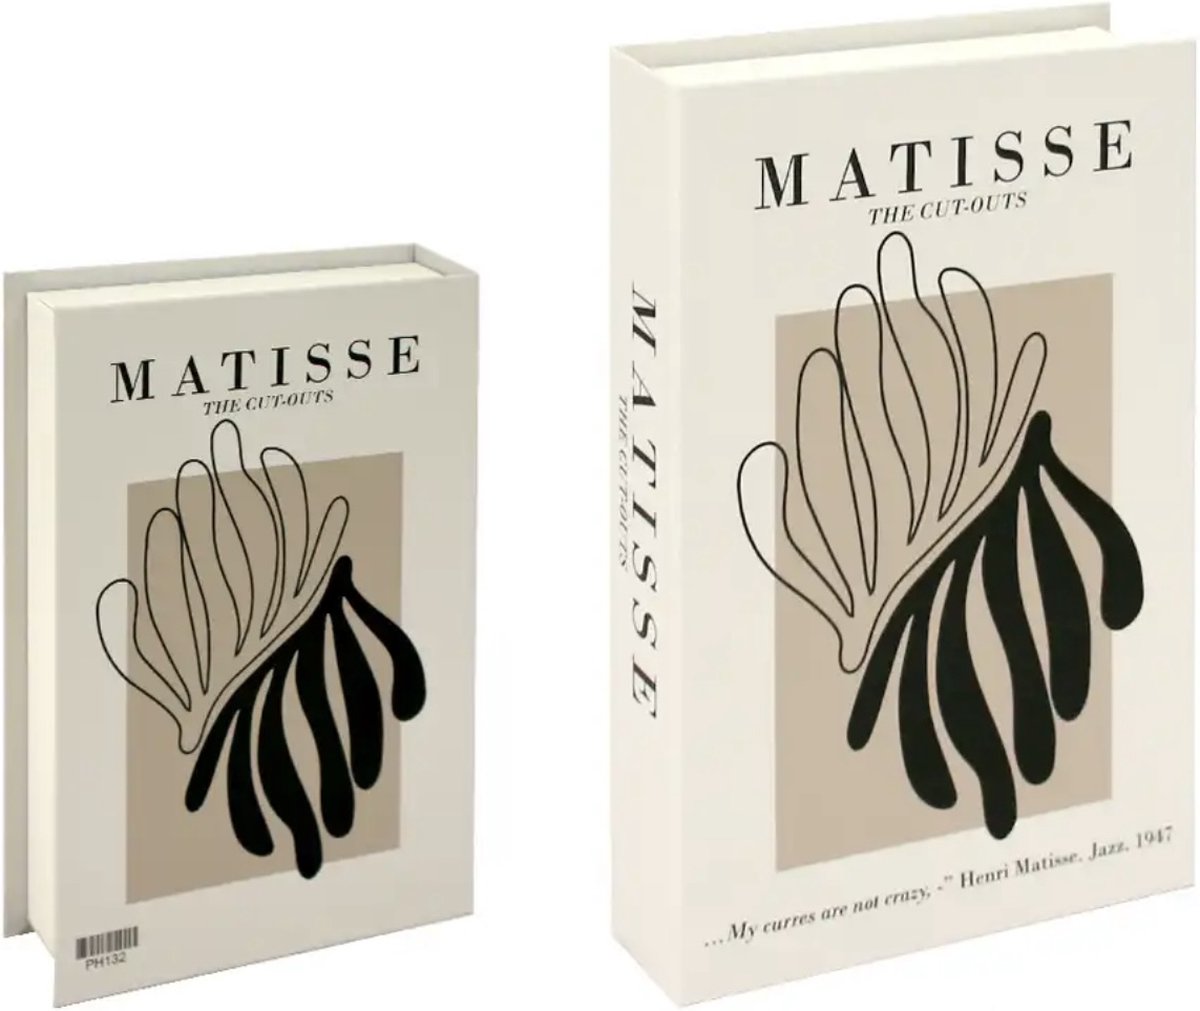 Opberg boek - Matisse - Beige- Opbergbox - Opbergdoos - Decoratie woonkamer - Boeken - Nep boek - Opbergboek